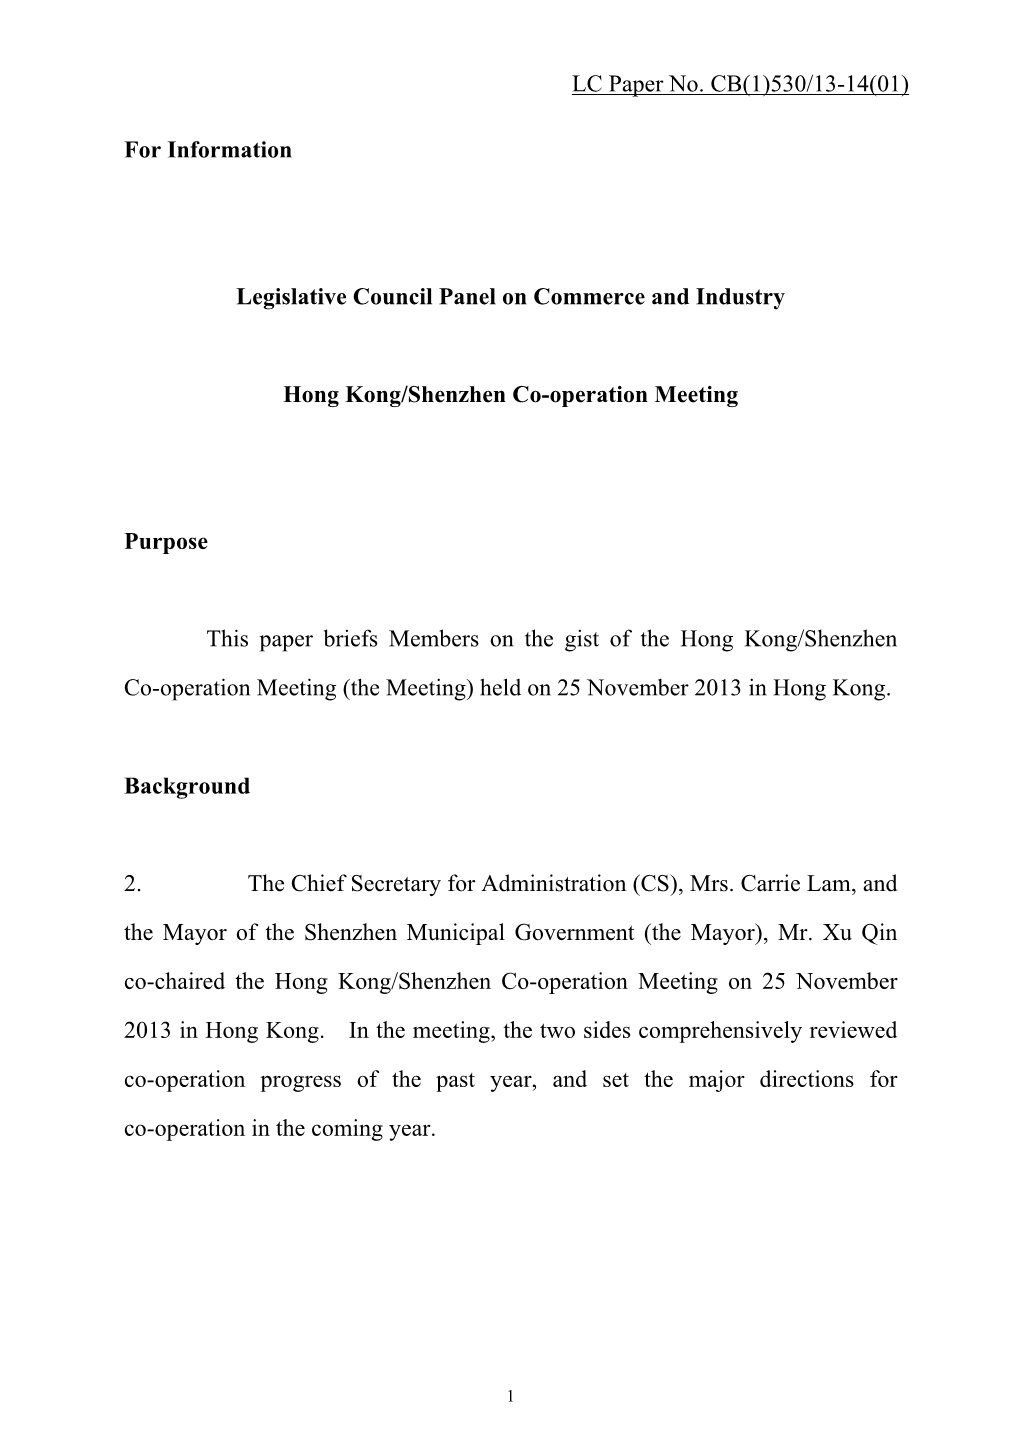 Hong Kong/Shenzhen Co-Operation Meeting